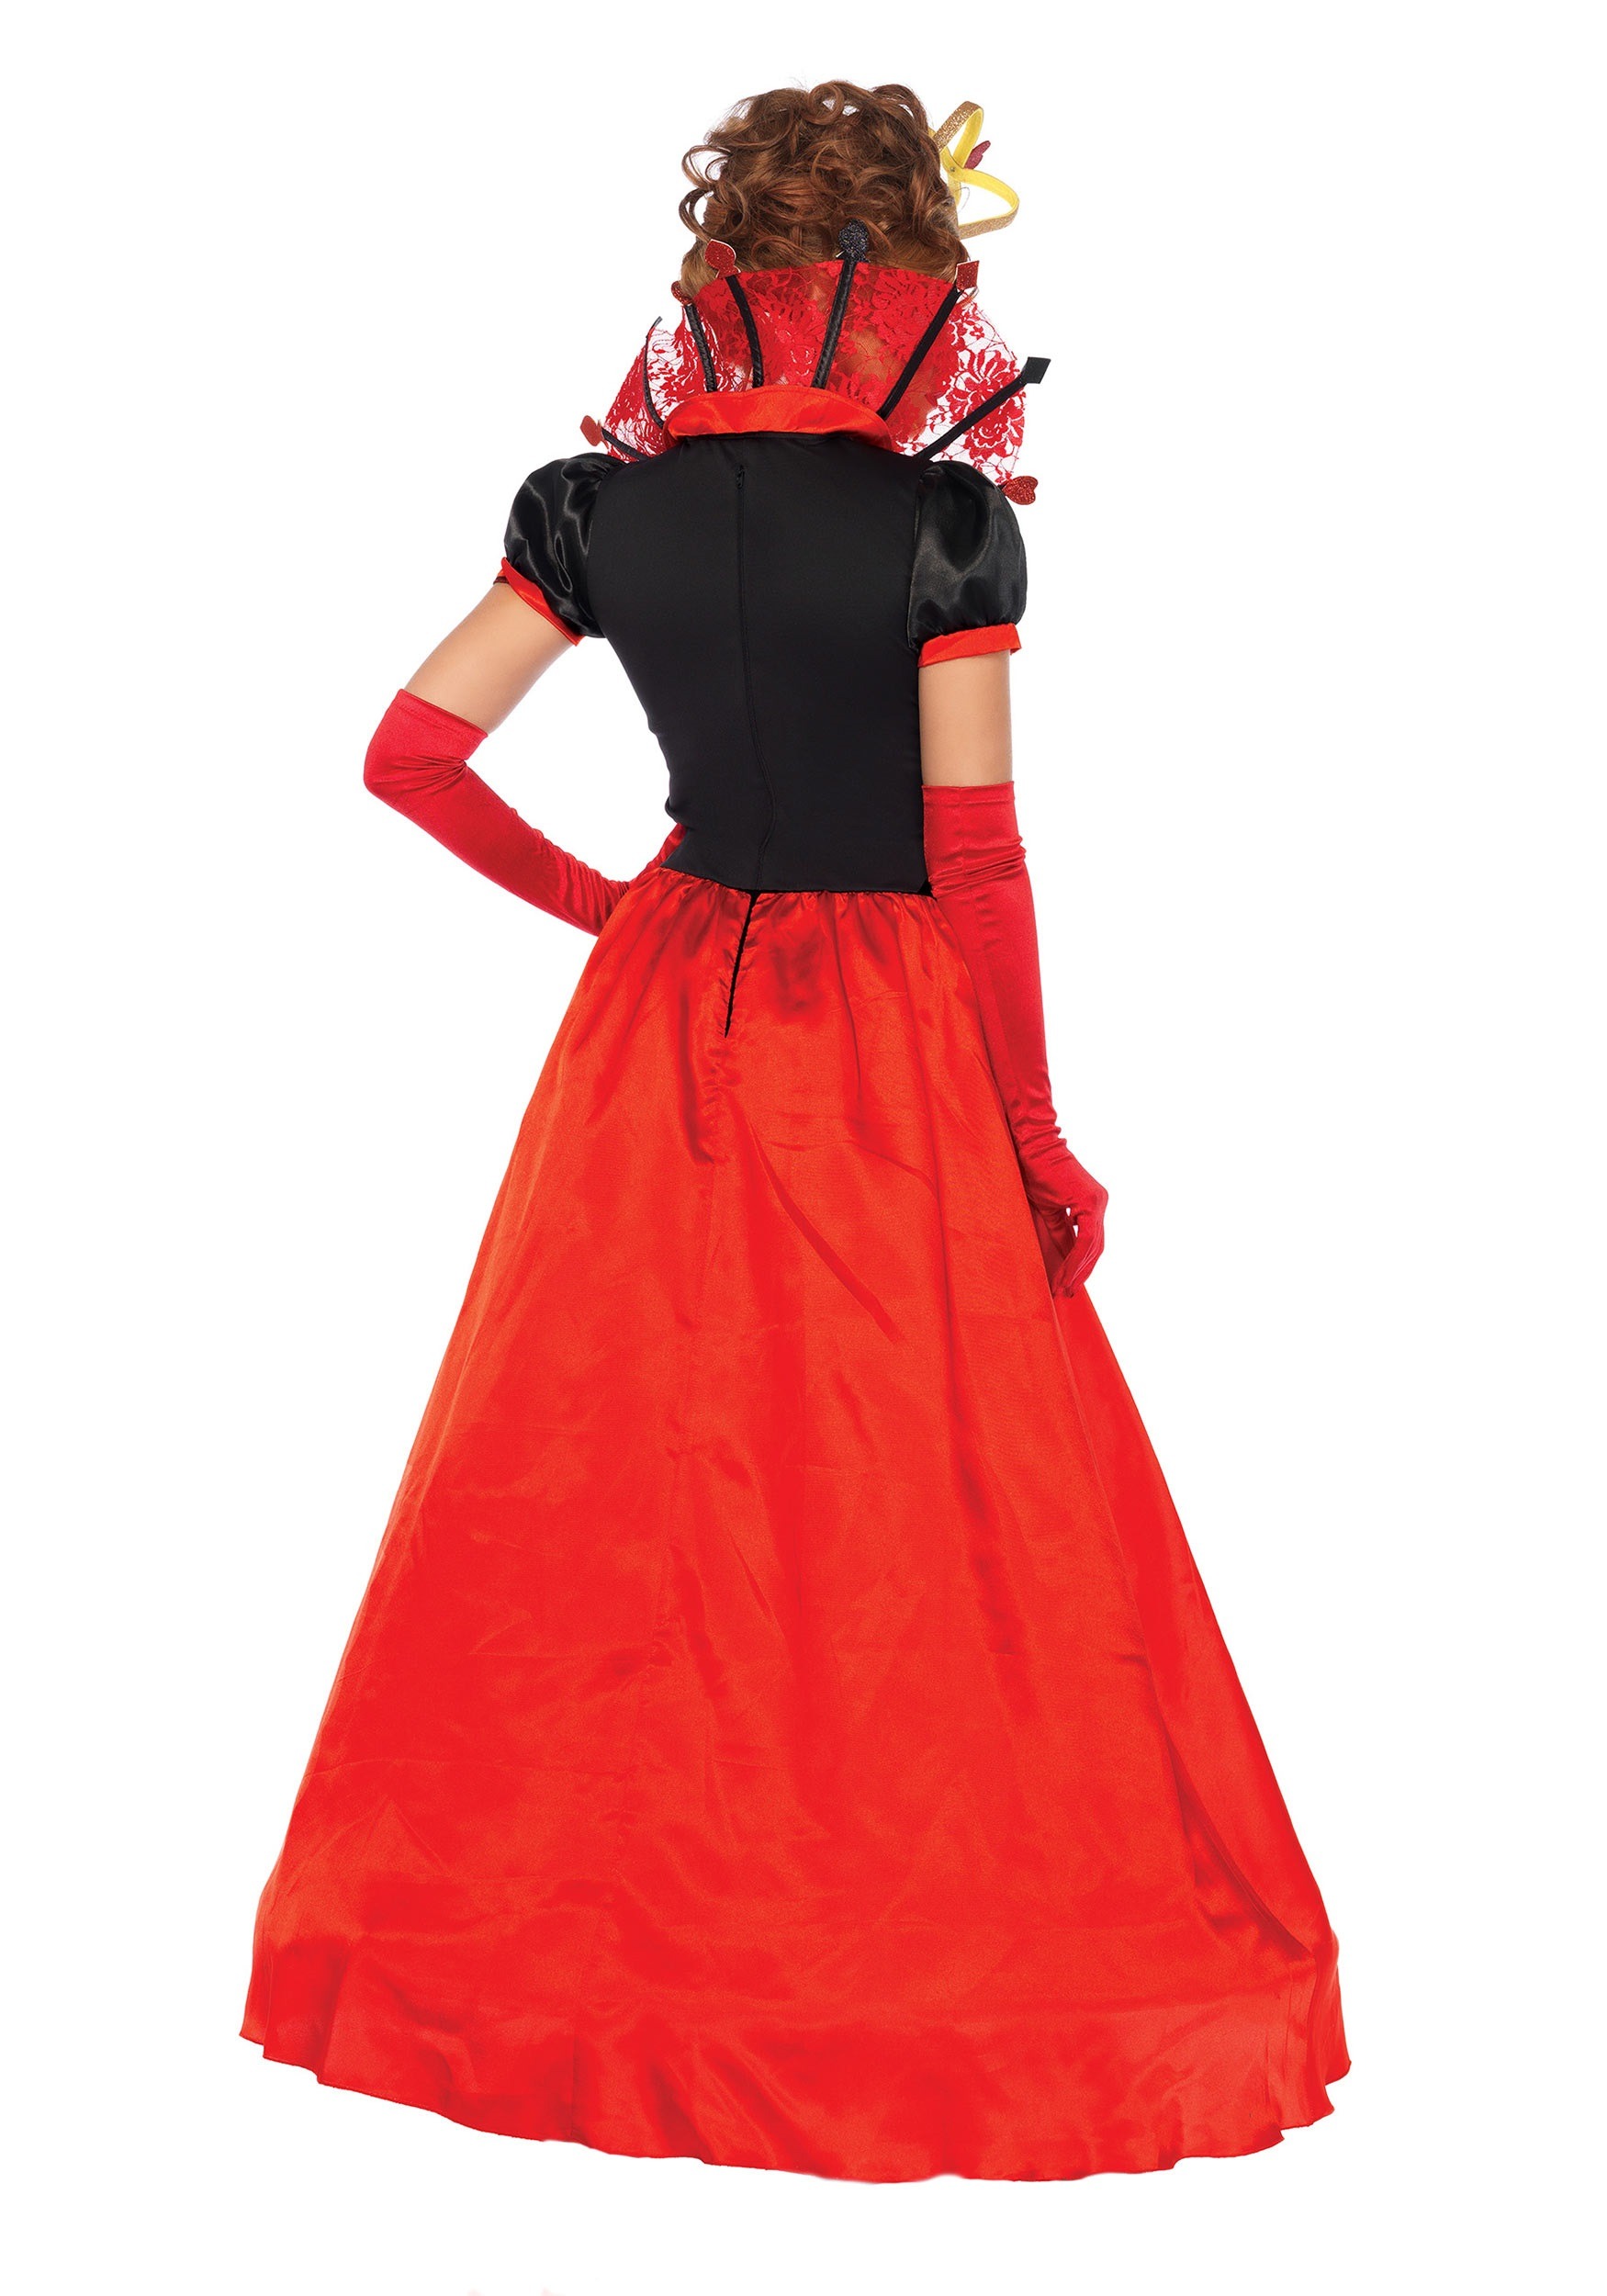 Women's Deluxe Queen of Hearts Costume